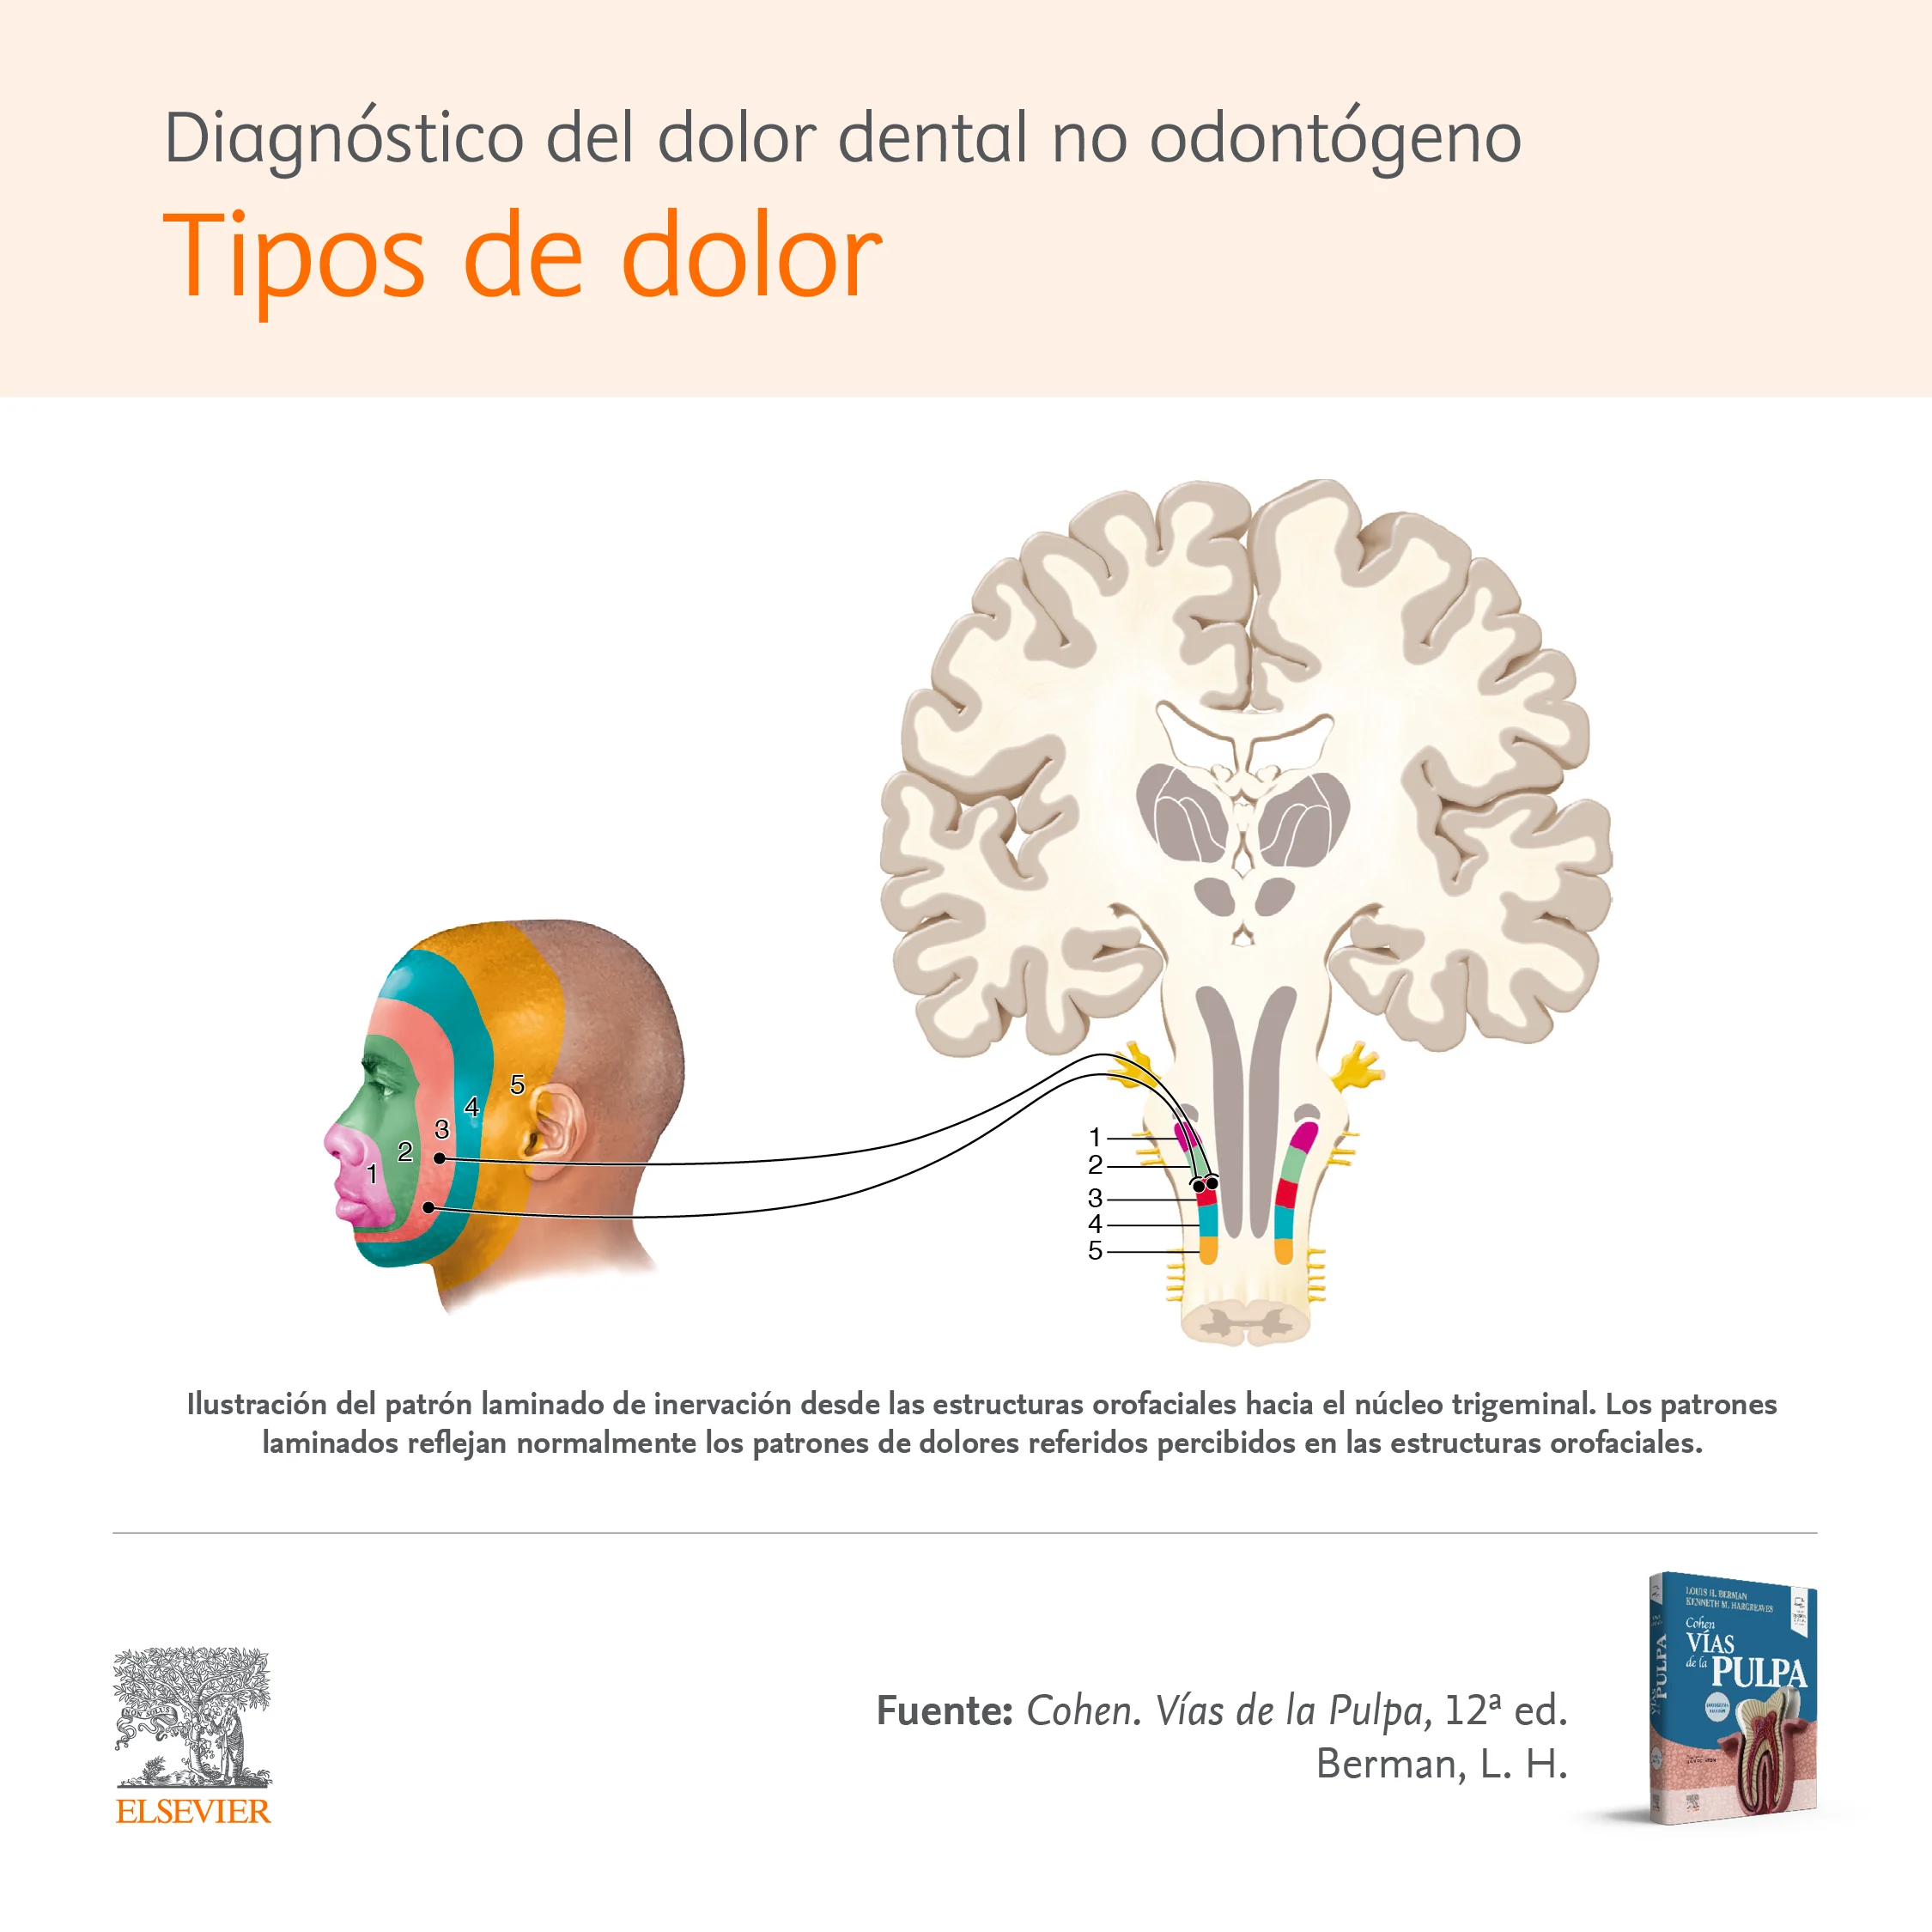 Infographic 2: Diagnósticos del dolor dental no odontógeno - Tipos de dolor